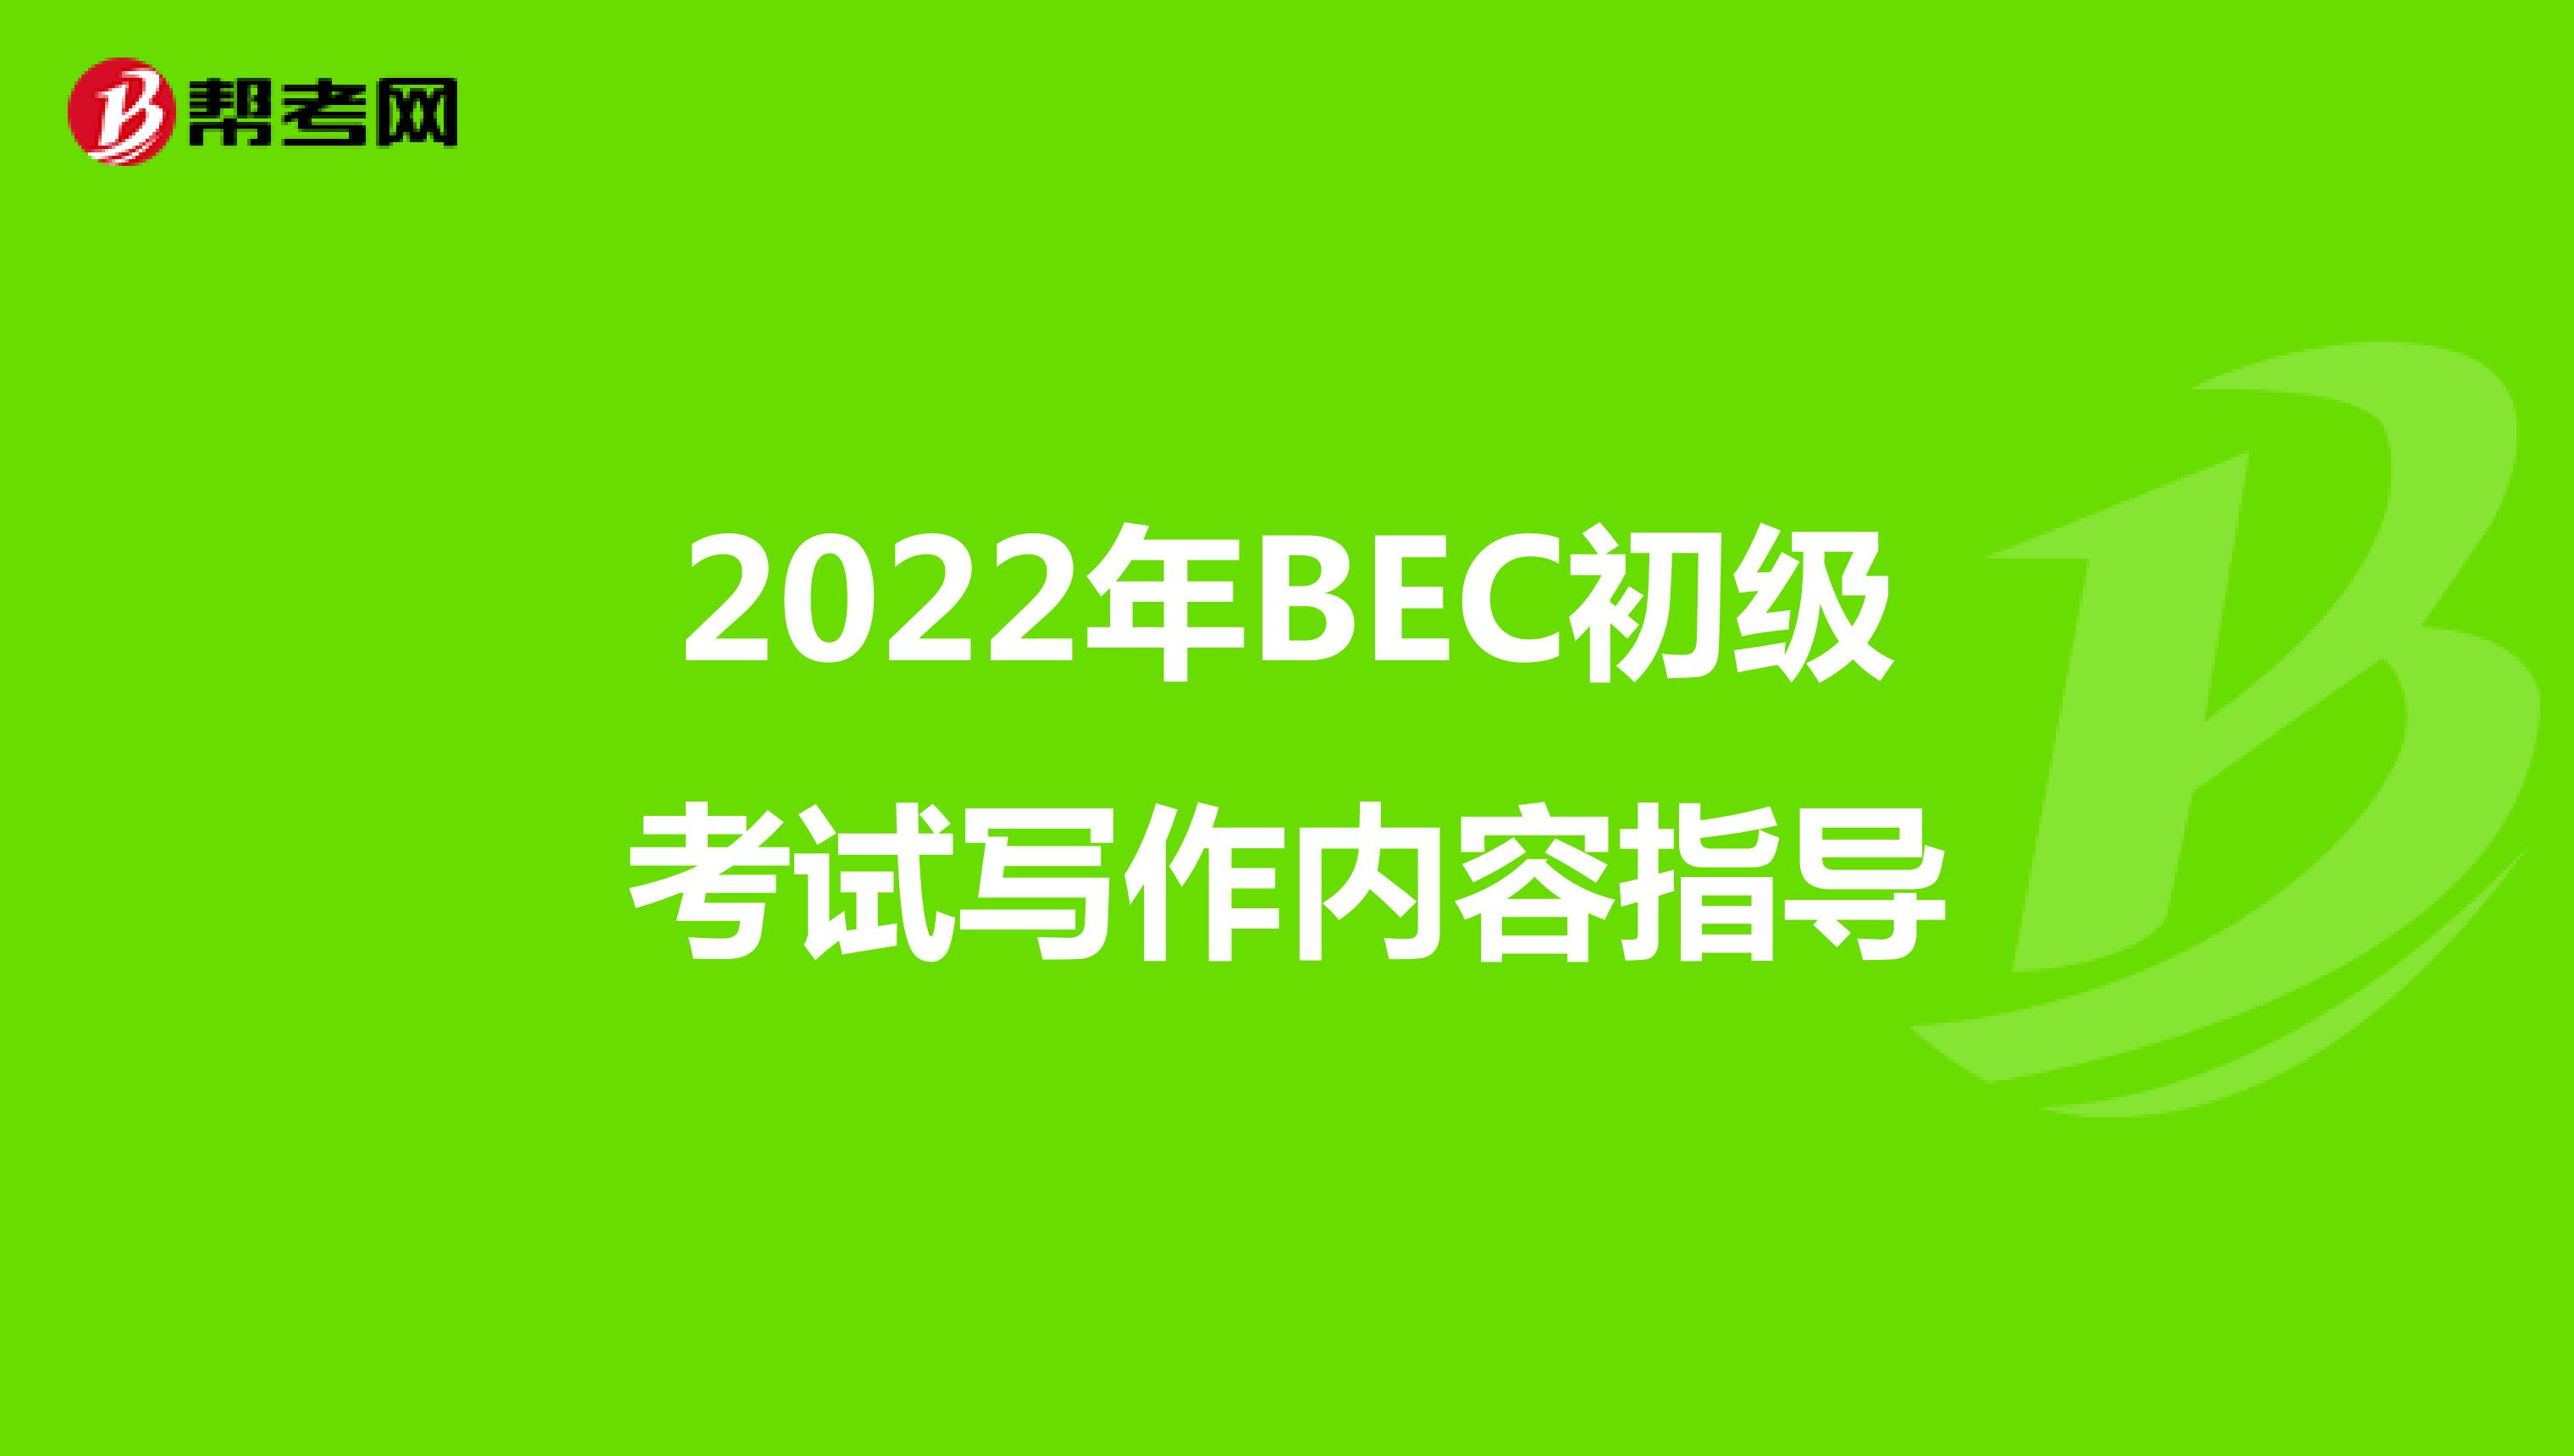 2022年BEC初级考试写作内容指导